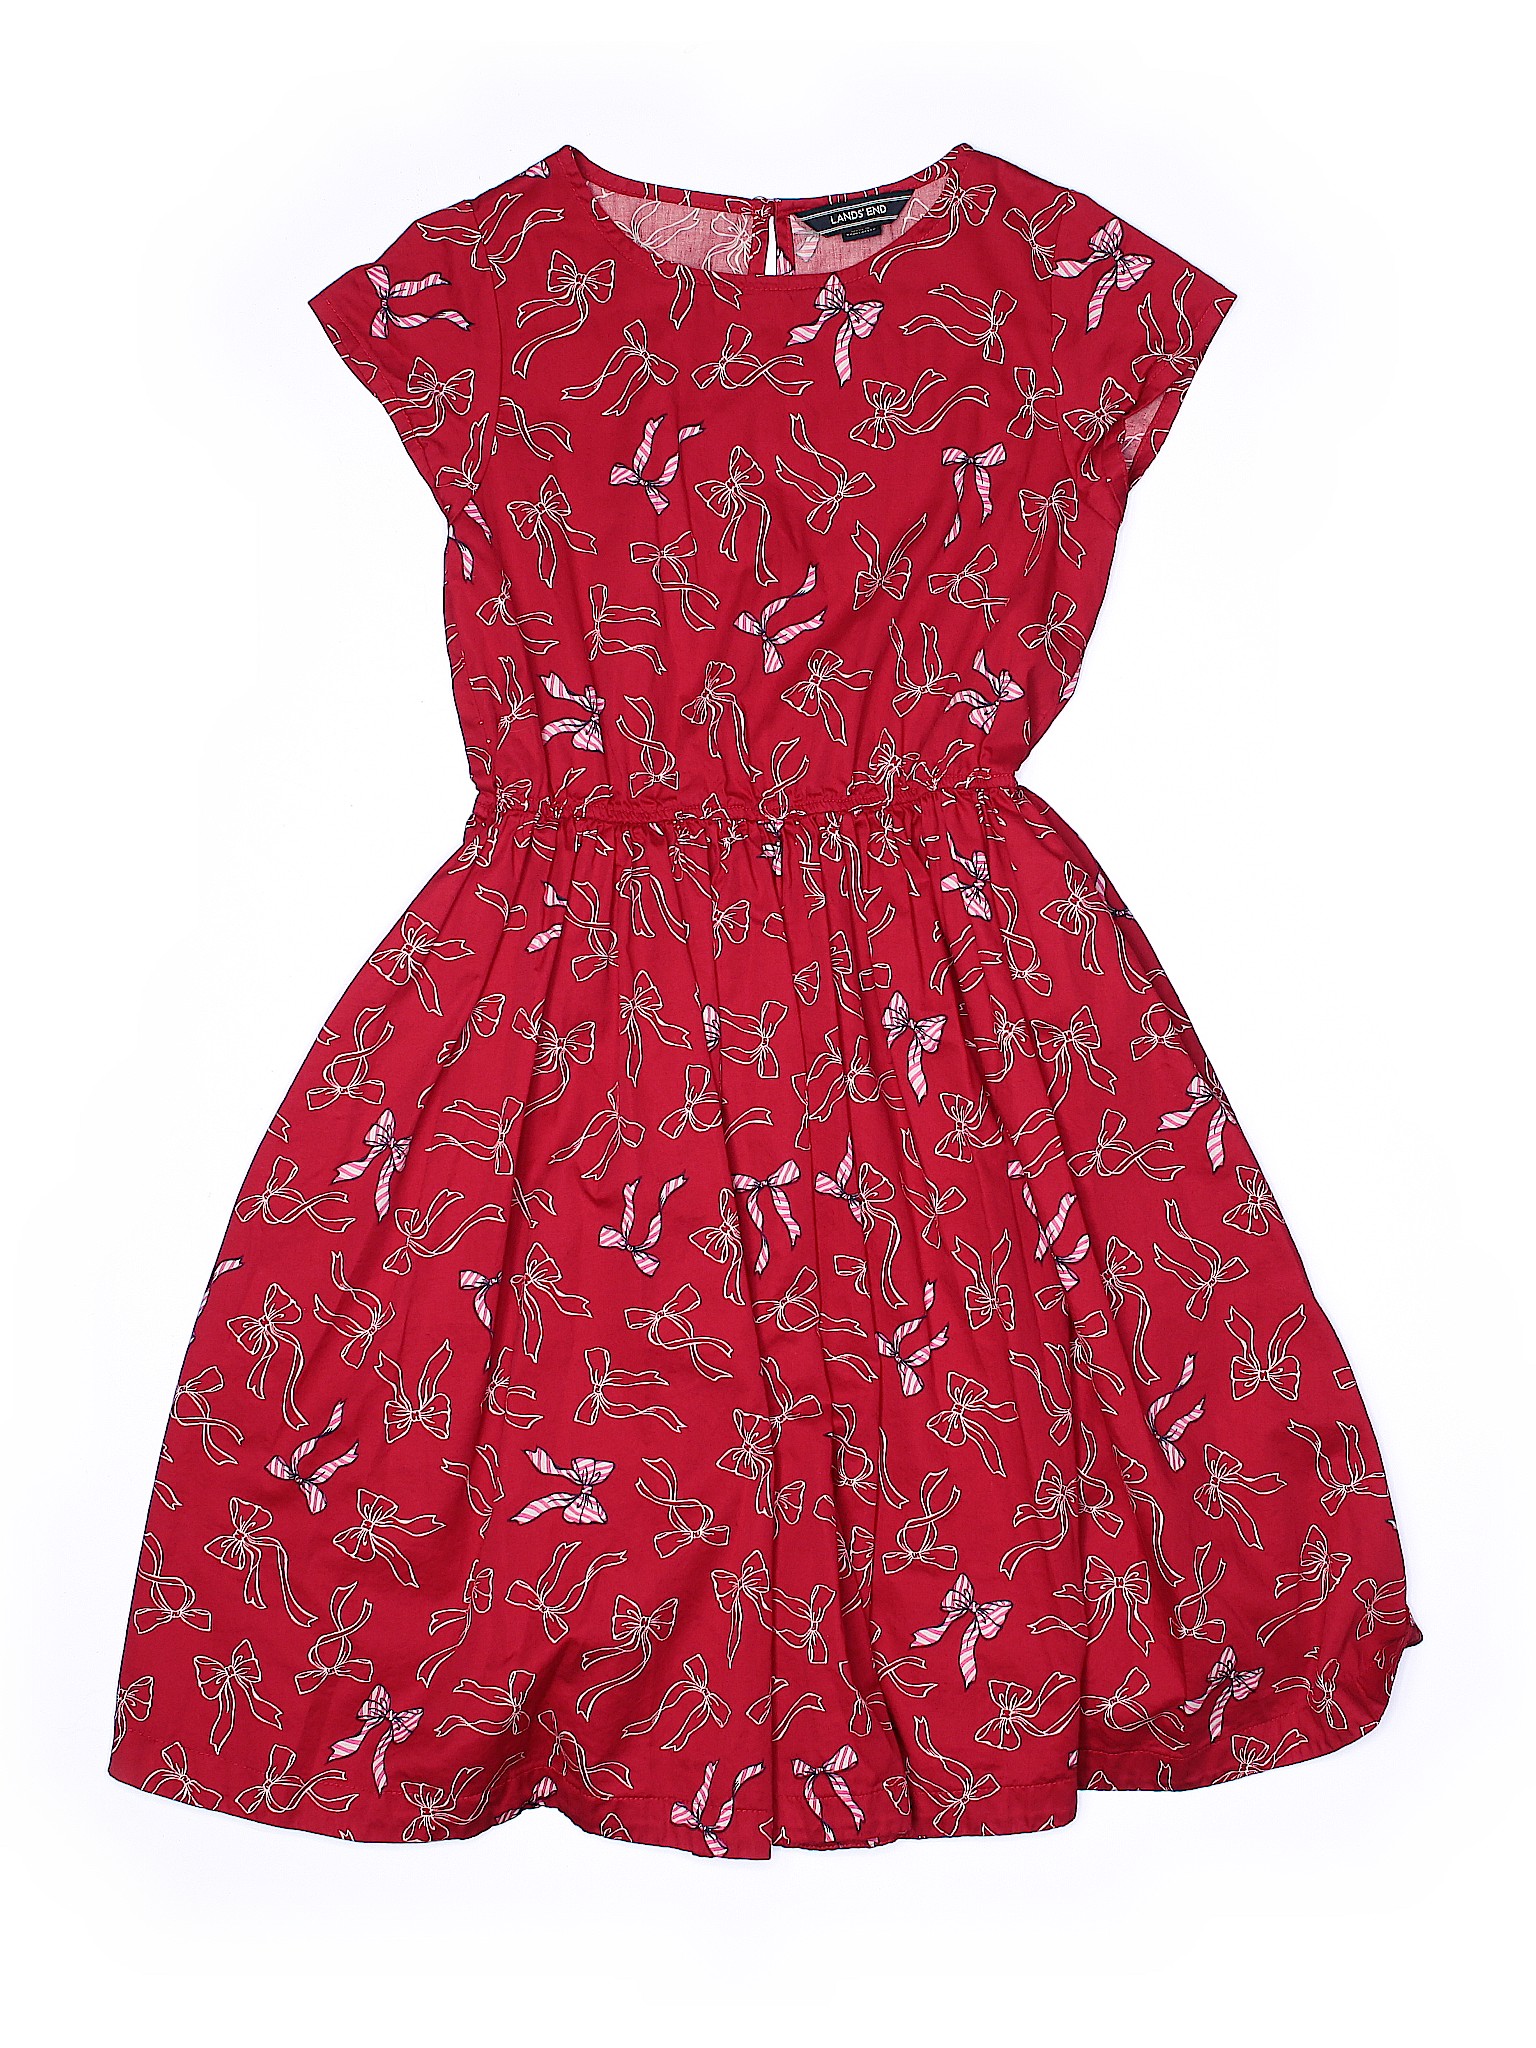 Lands' End Girls Red Dress 14 | eBay